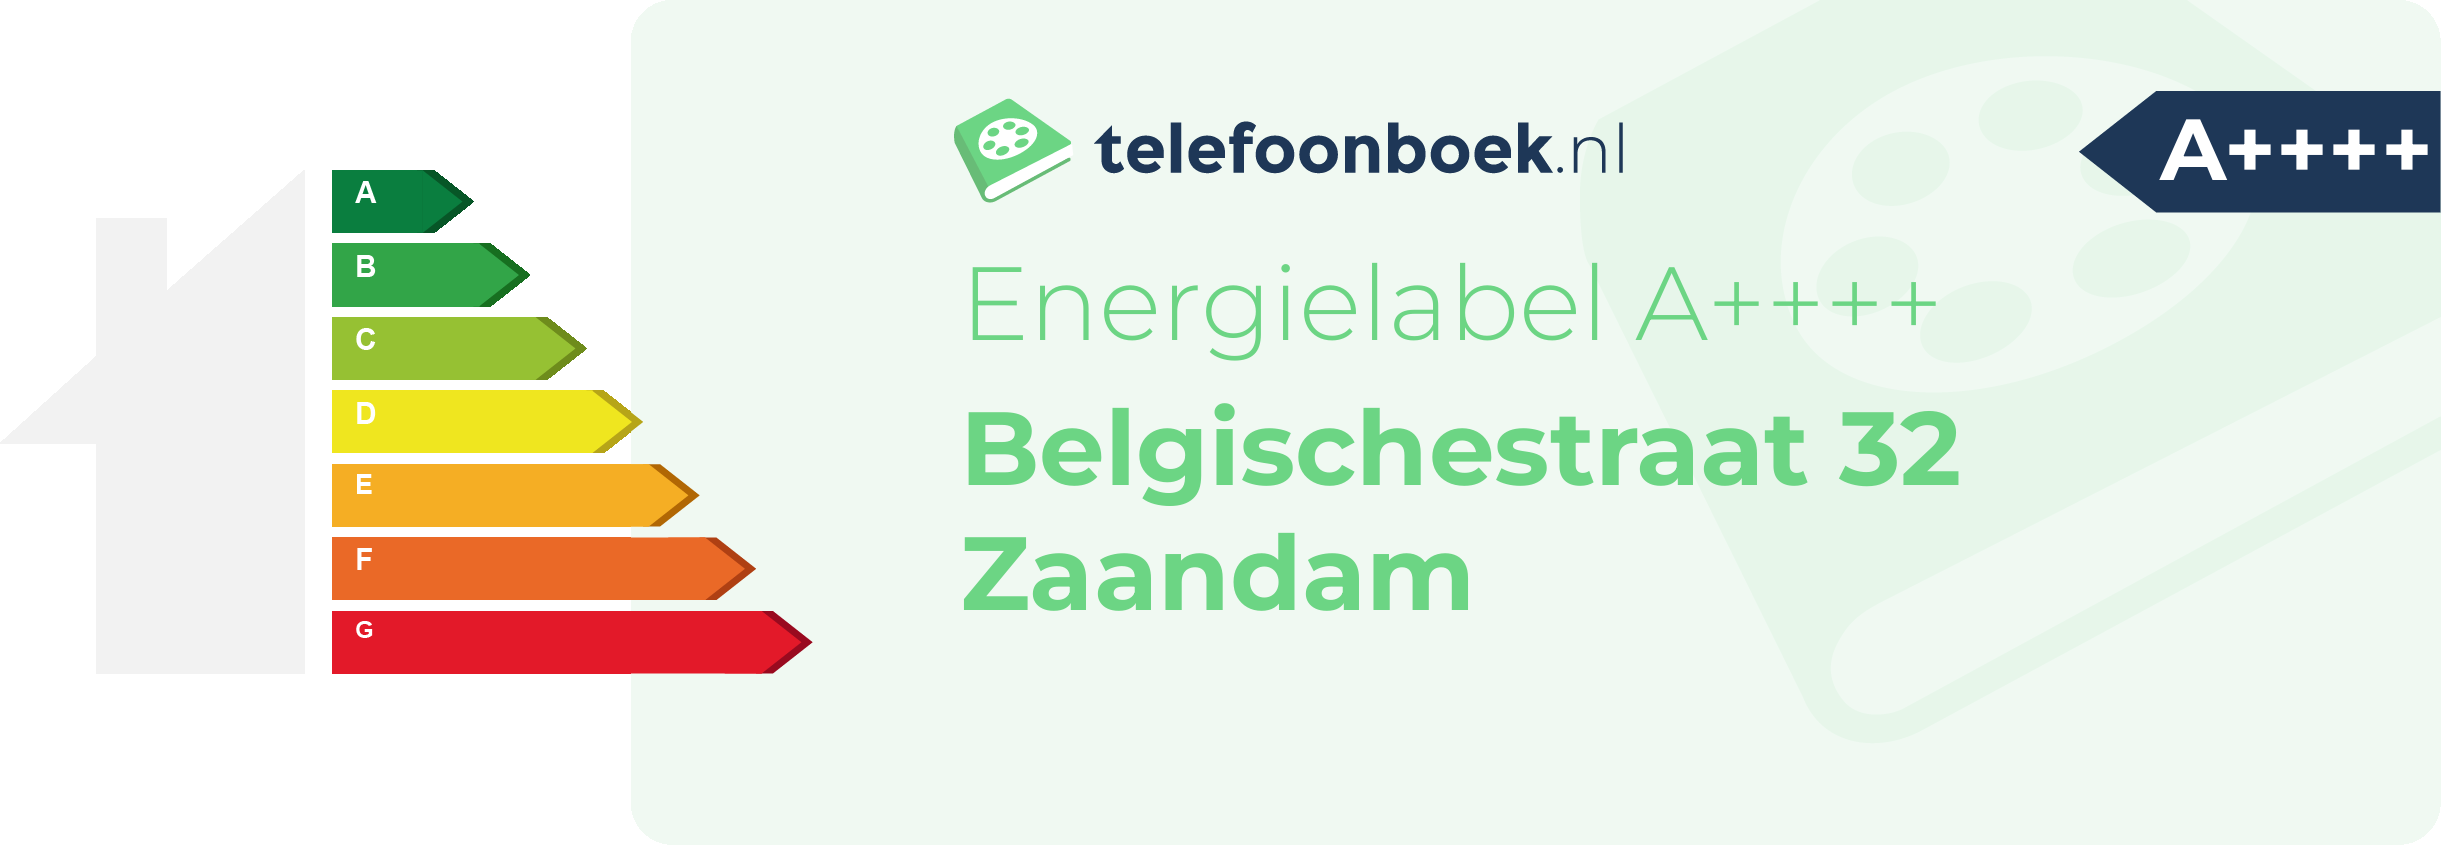 Energielabel Belgischestraat 32 Zaandam